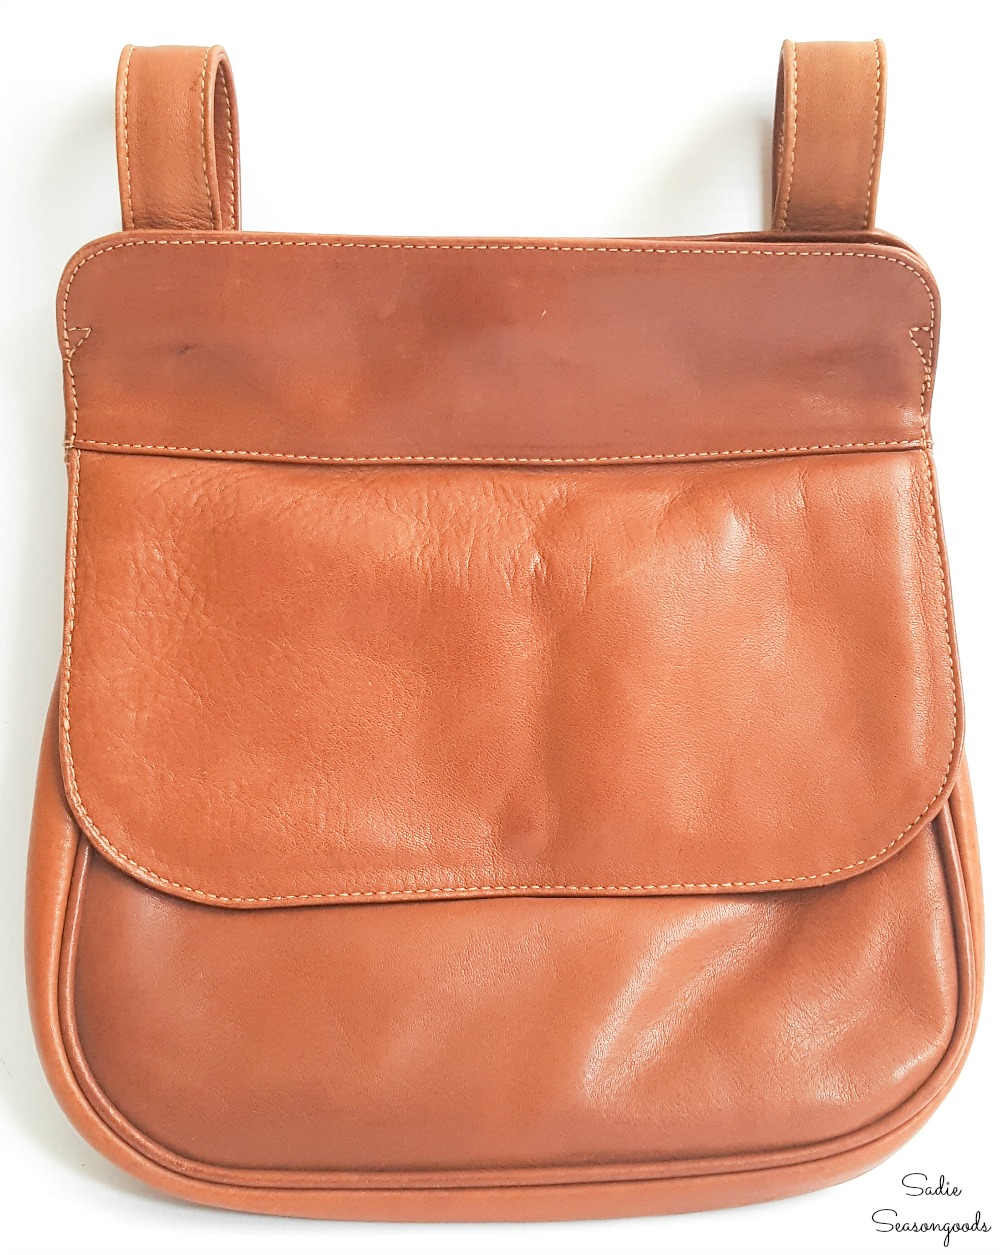 Repurposing a small handbag as a hip purse